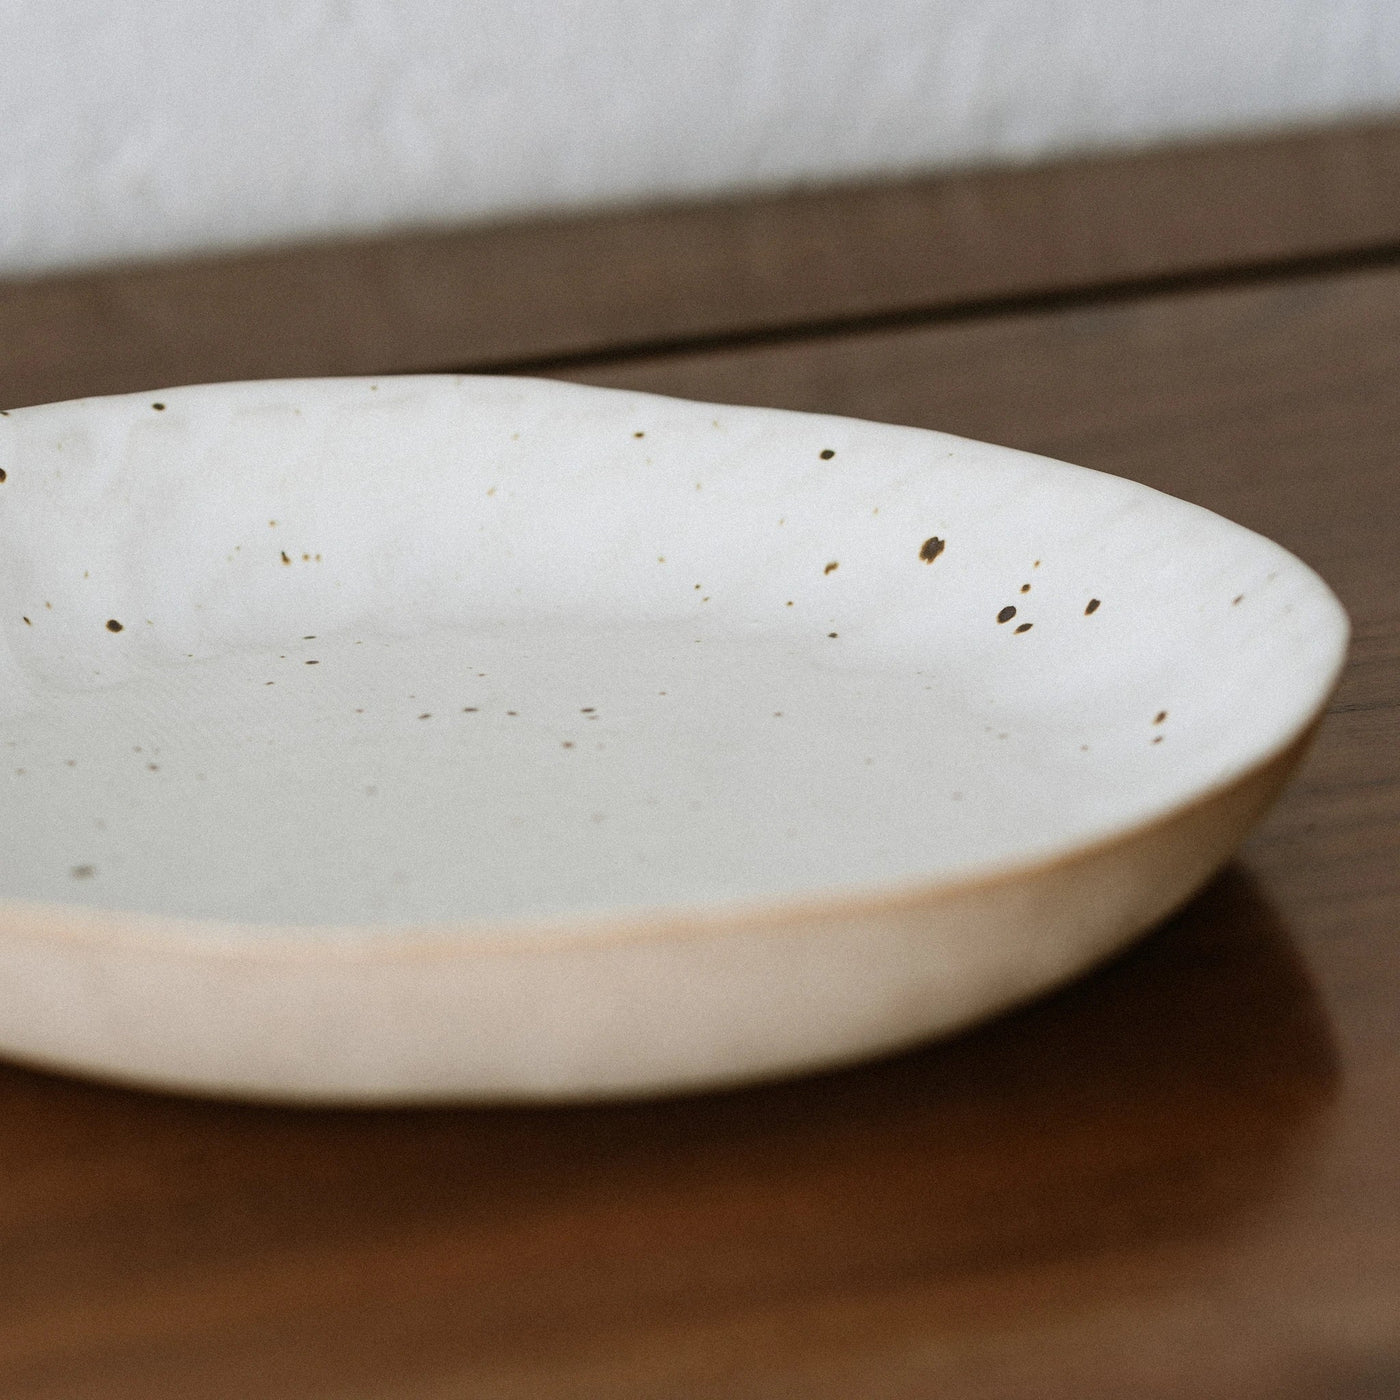 Organic Shaped Bowl Home Maelstrom 